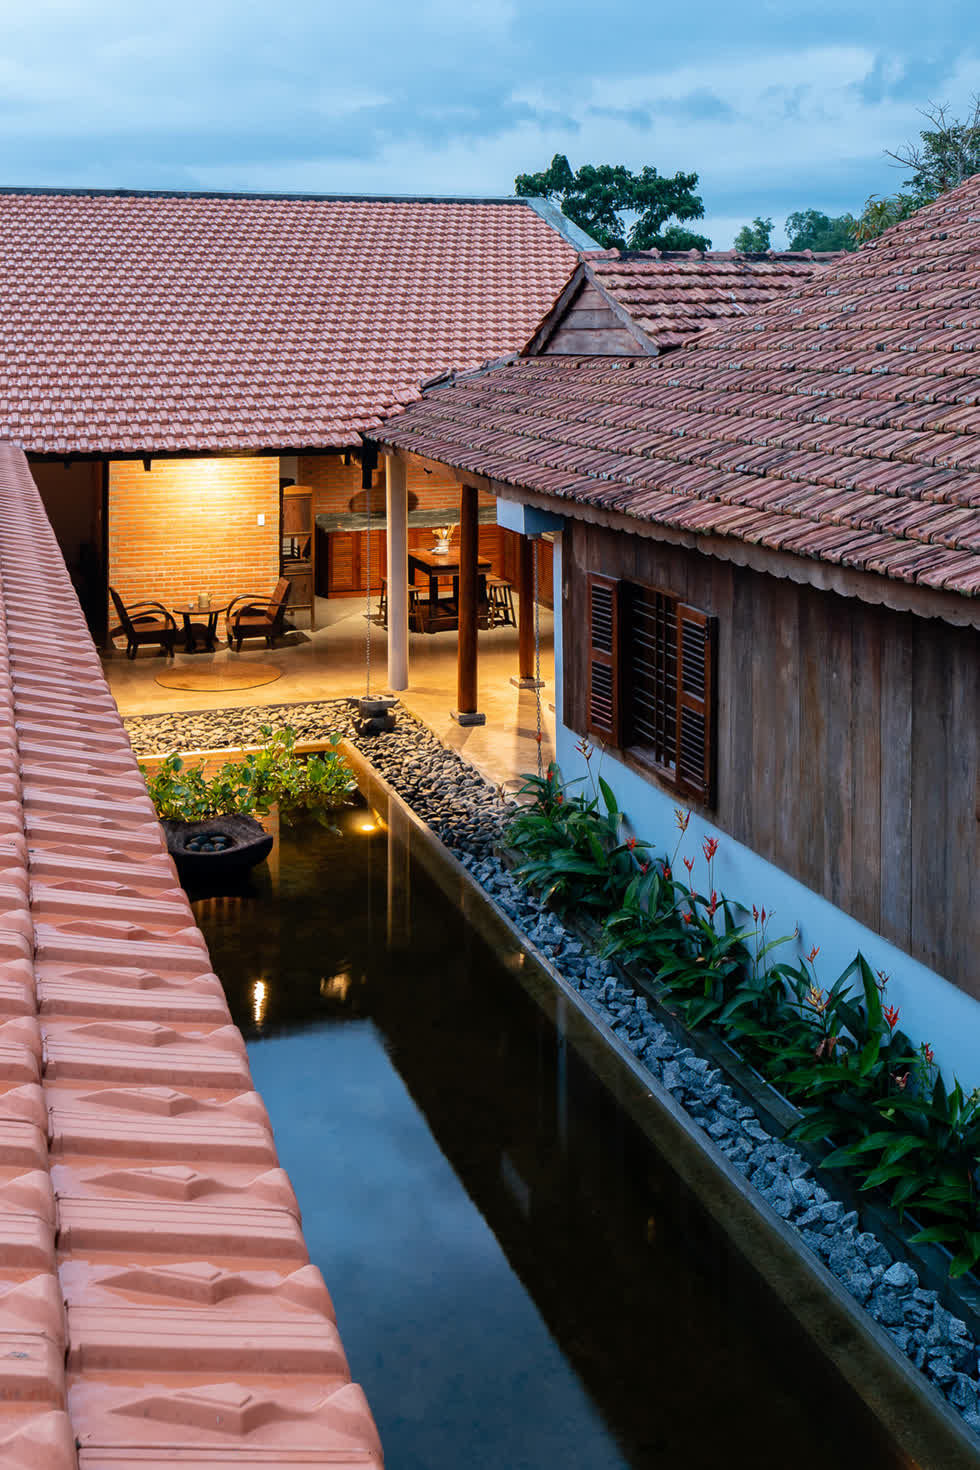 Mái ngói dốc là một thiết kế quen thuộc với những ngôi nhà ở vùng nông thôn Việt Nam.